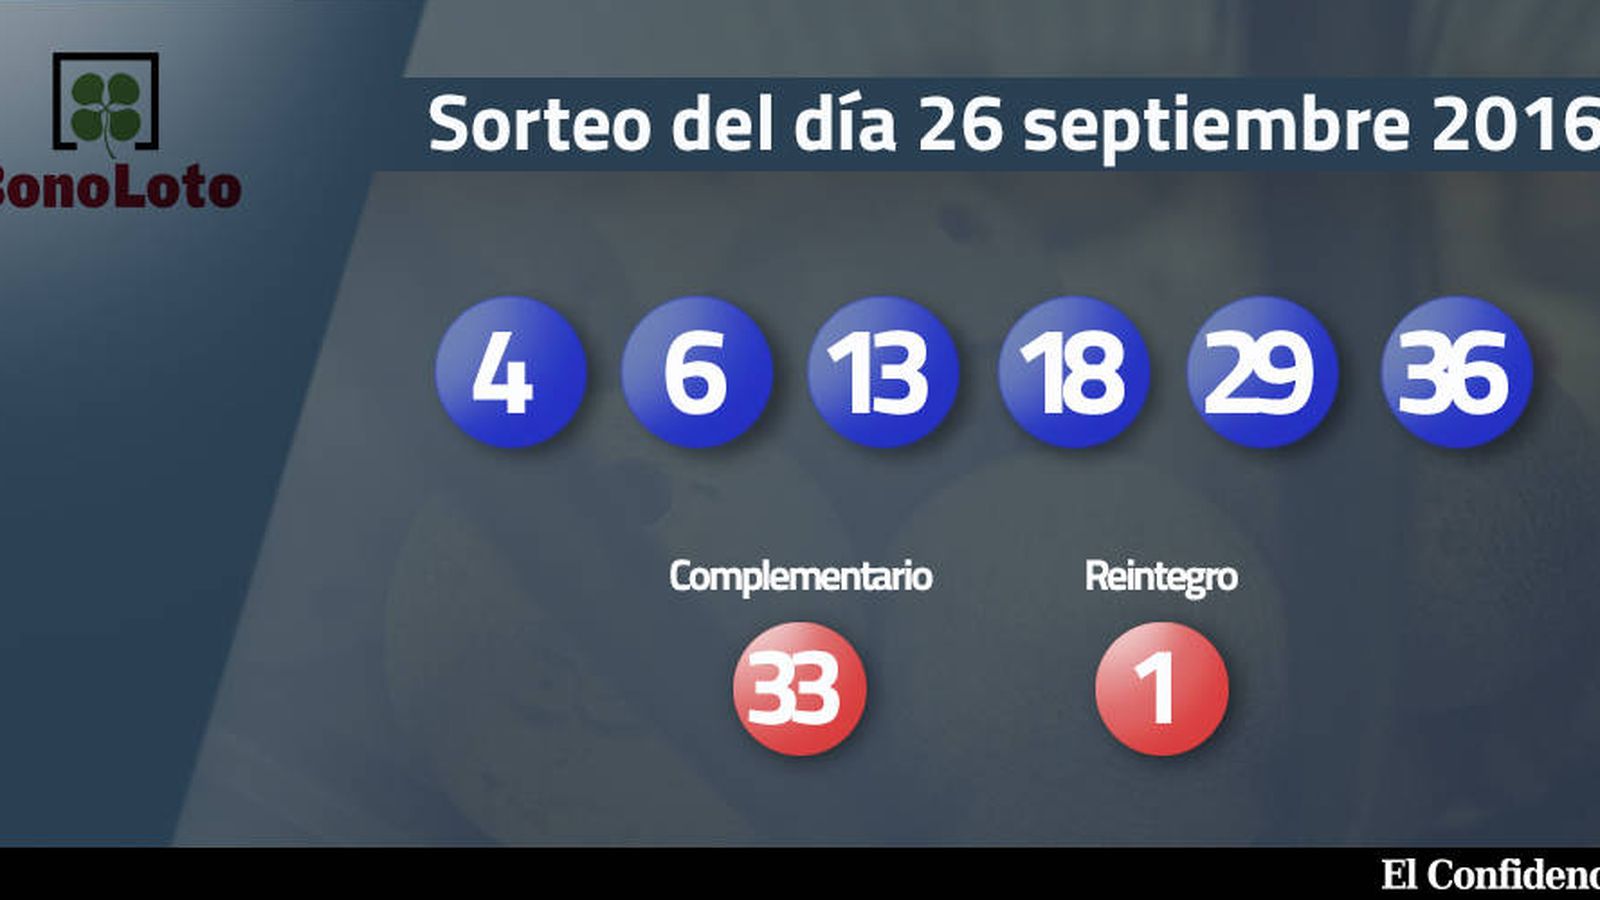 Foto: Resultados del sorteo de la Bonoloto del 26 septiembre 2016 (EC)